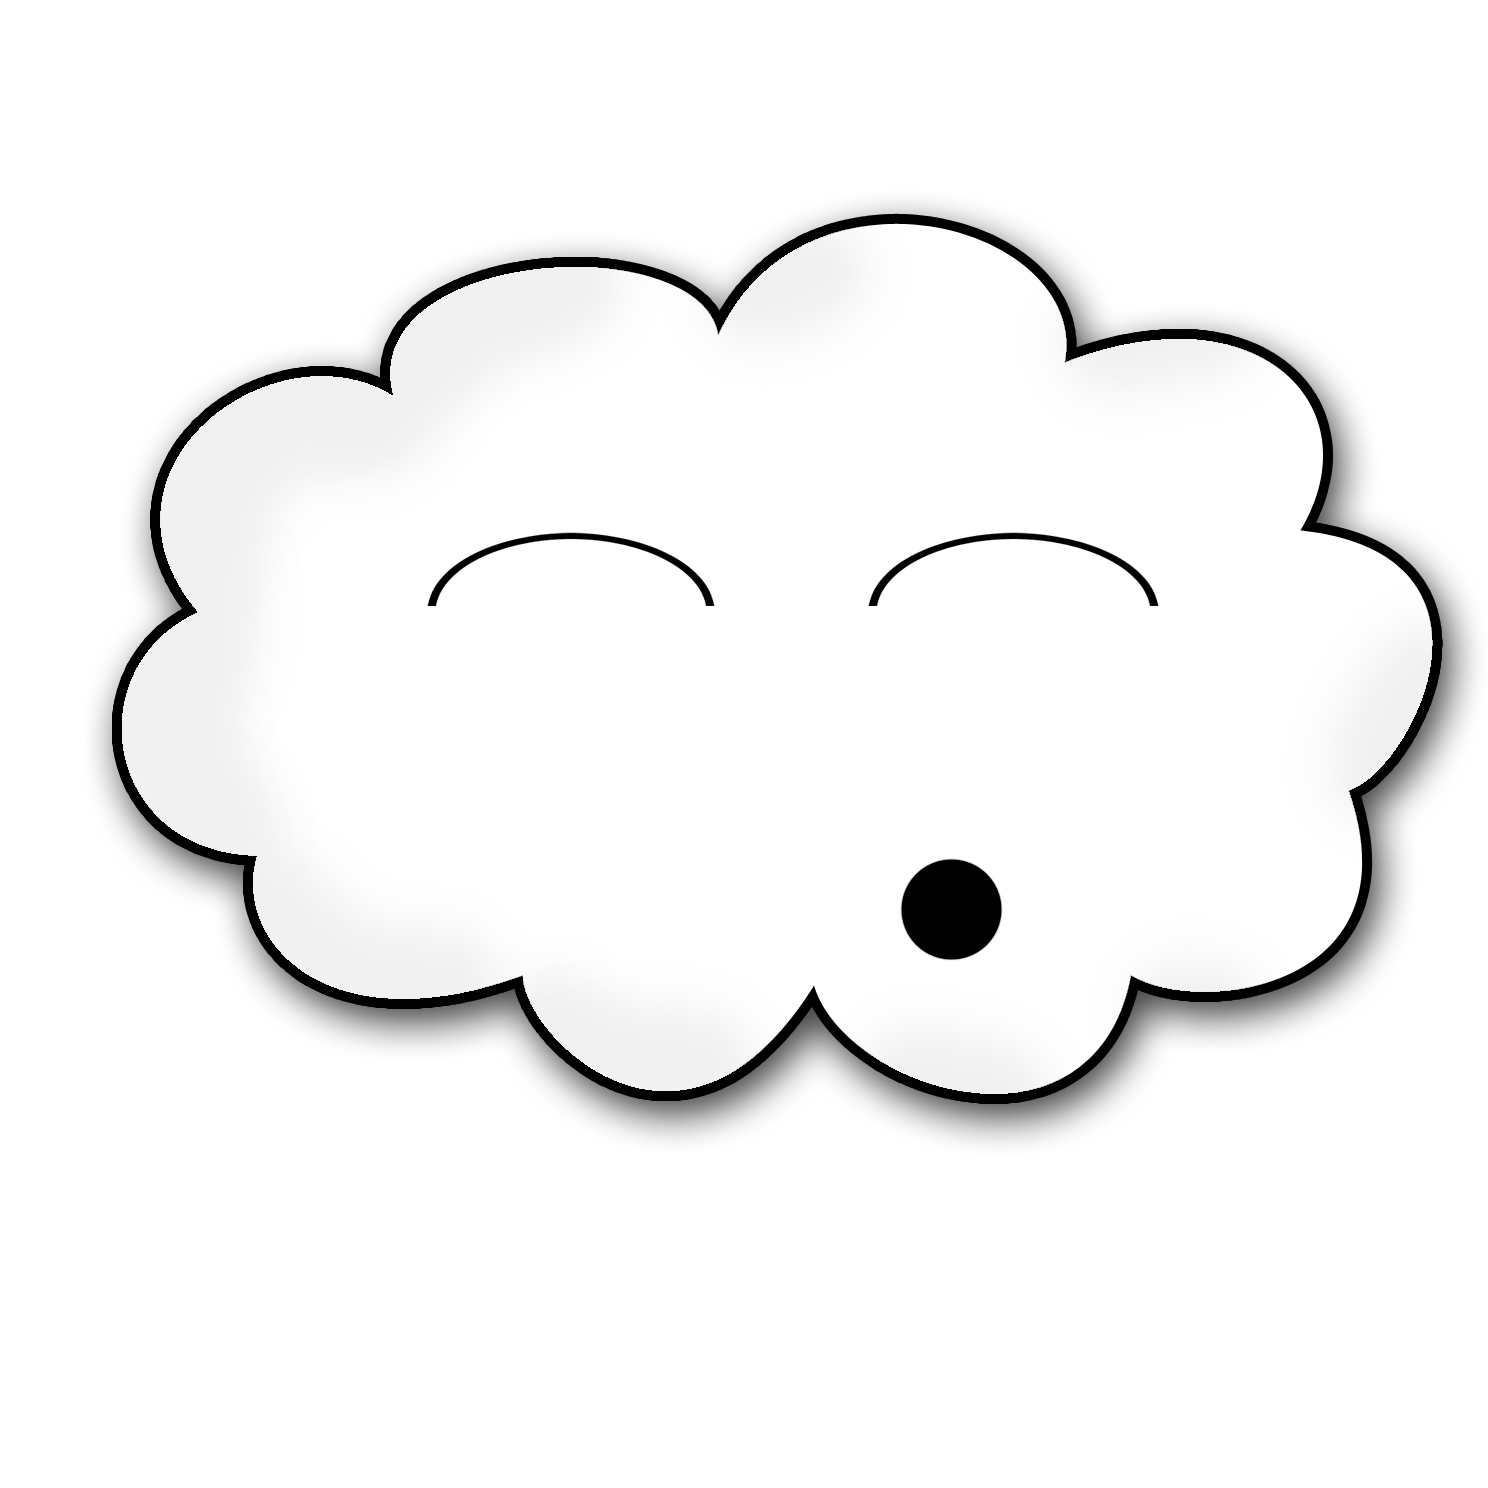 Cloud 3 | Free Images at Clker.com - vector clip art online ...